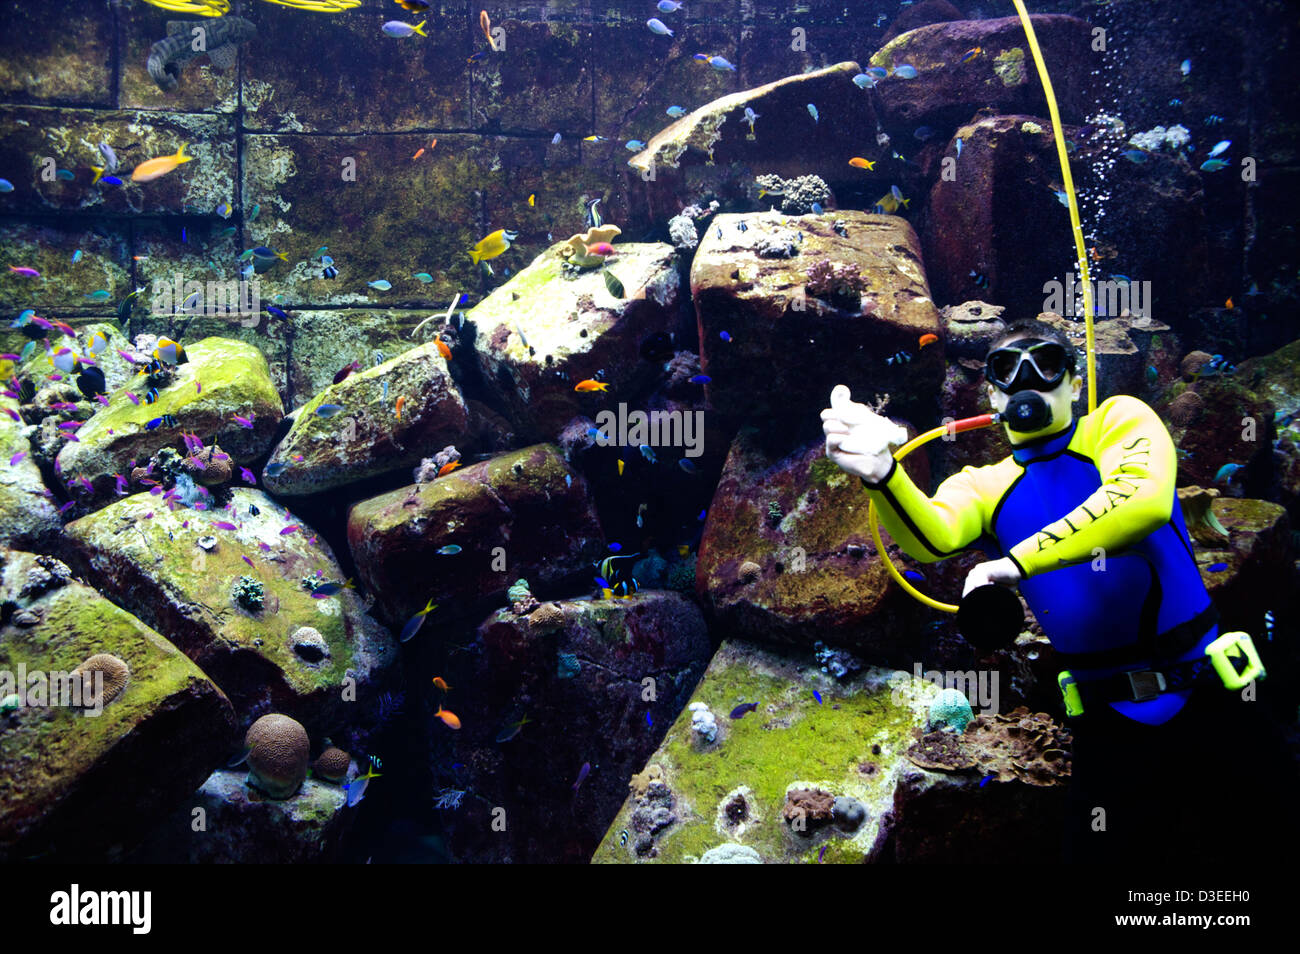 Eine Taucher reinigt Tank Glas Fisch im Aquarium in Atlantis Palm Hotel, während die exotischen Fische um ihn herum schwimmen. Stockfoto